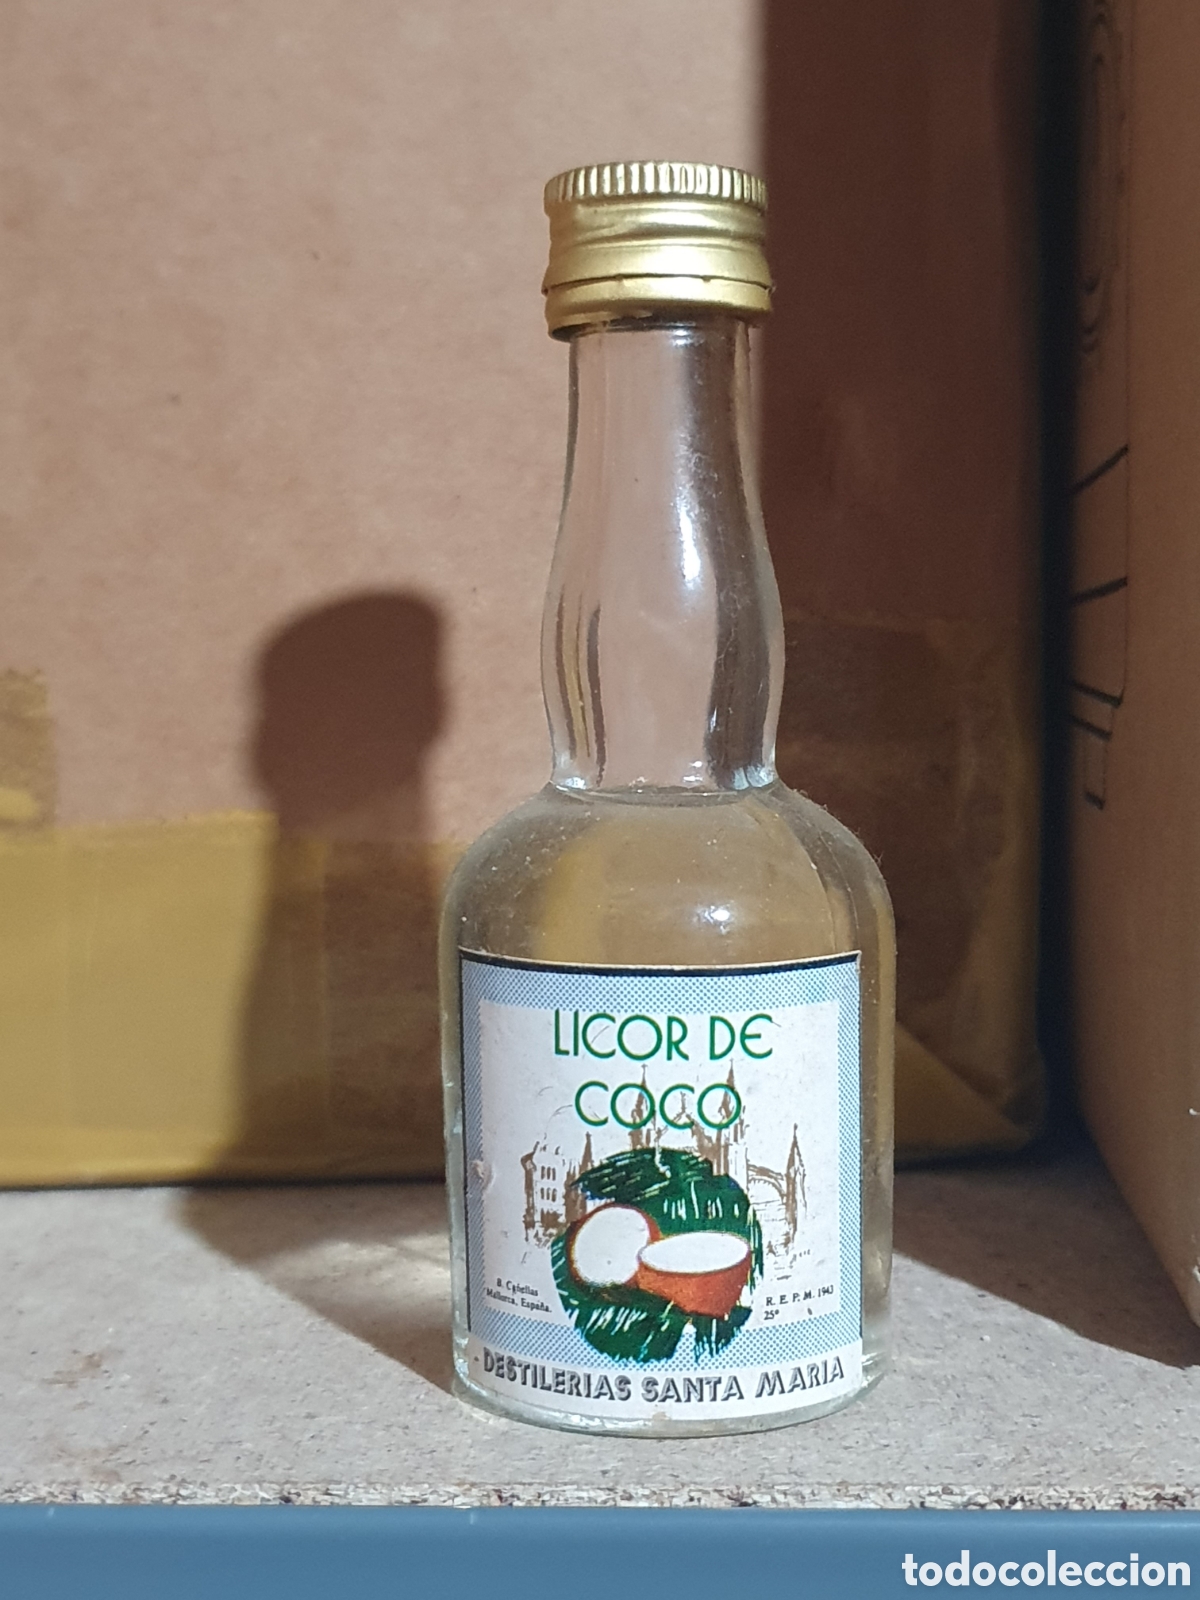 mini botella licor de coco - Compra venta en todocoleccion